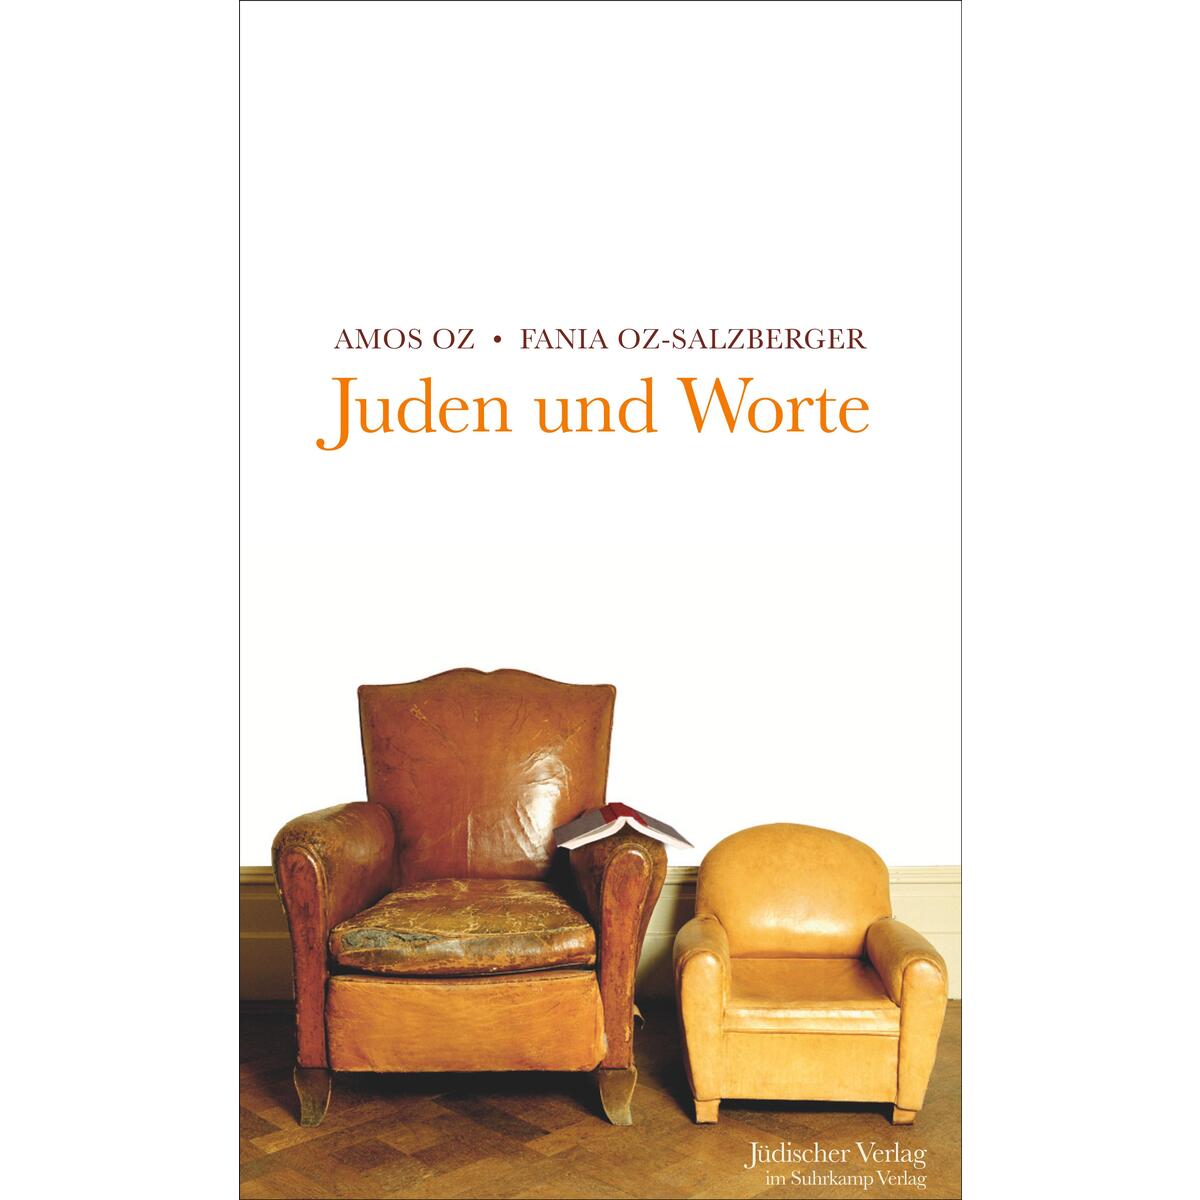 Juden und Worte von Suhrkamp Verlag AG